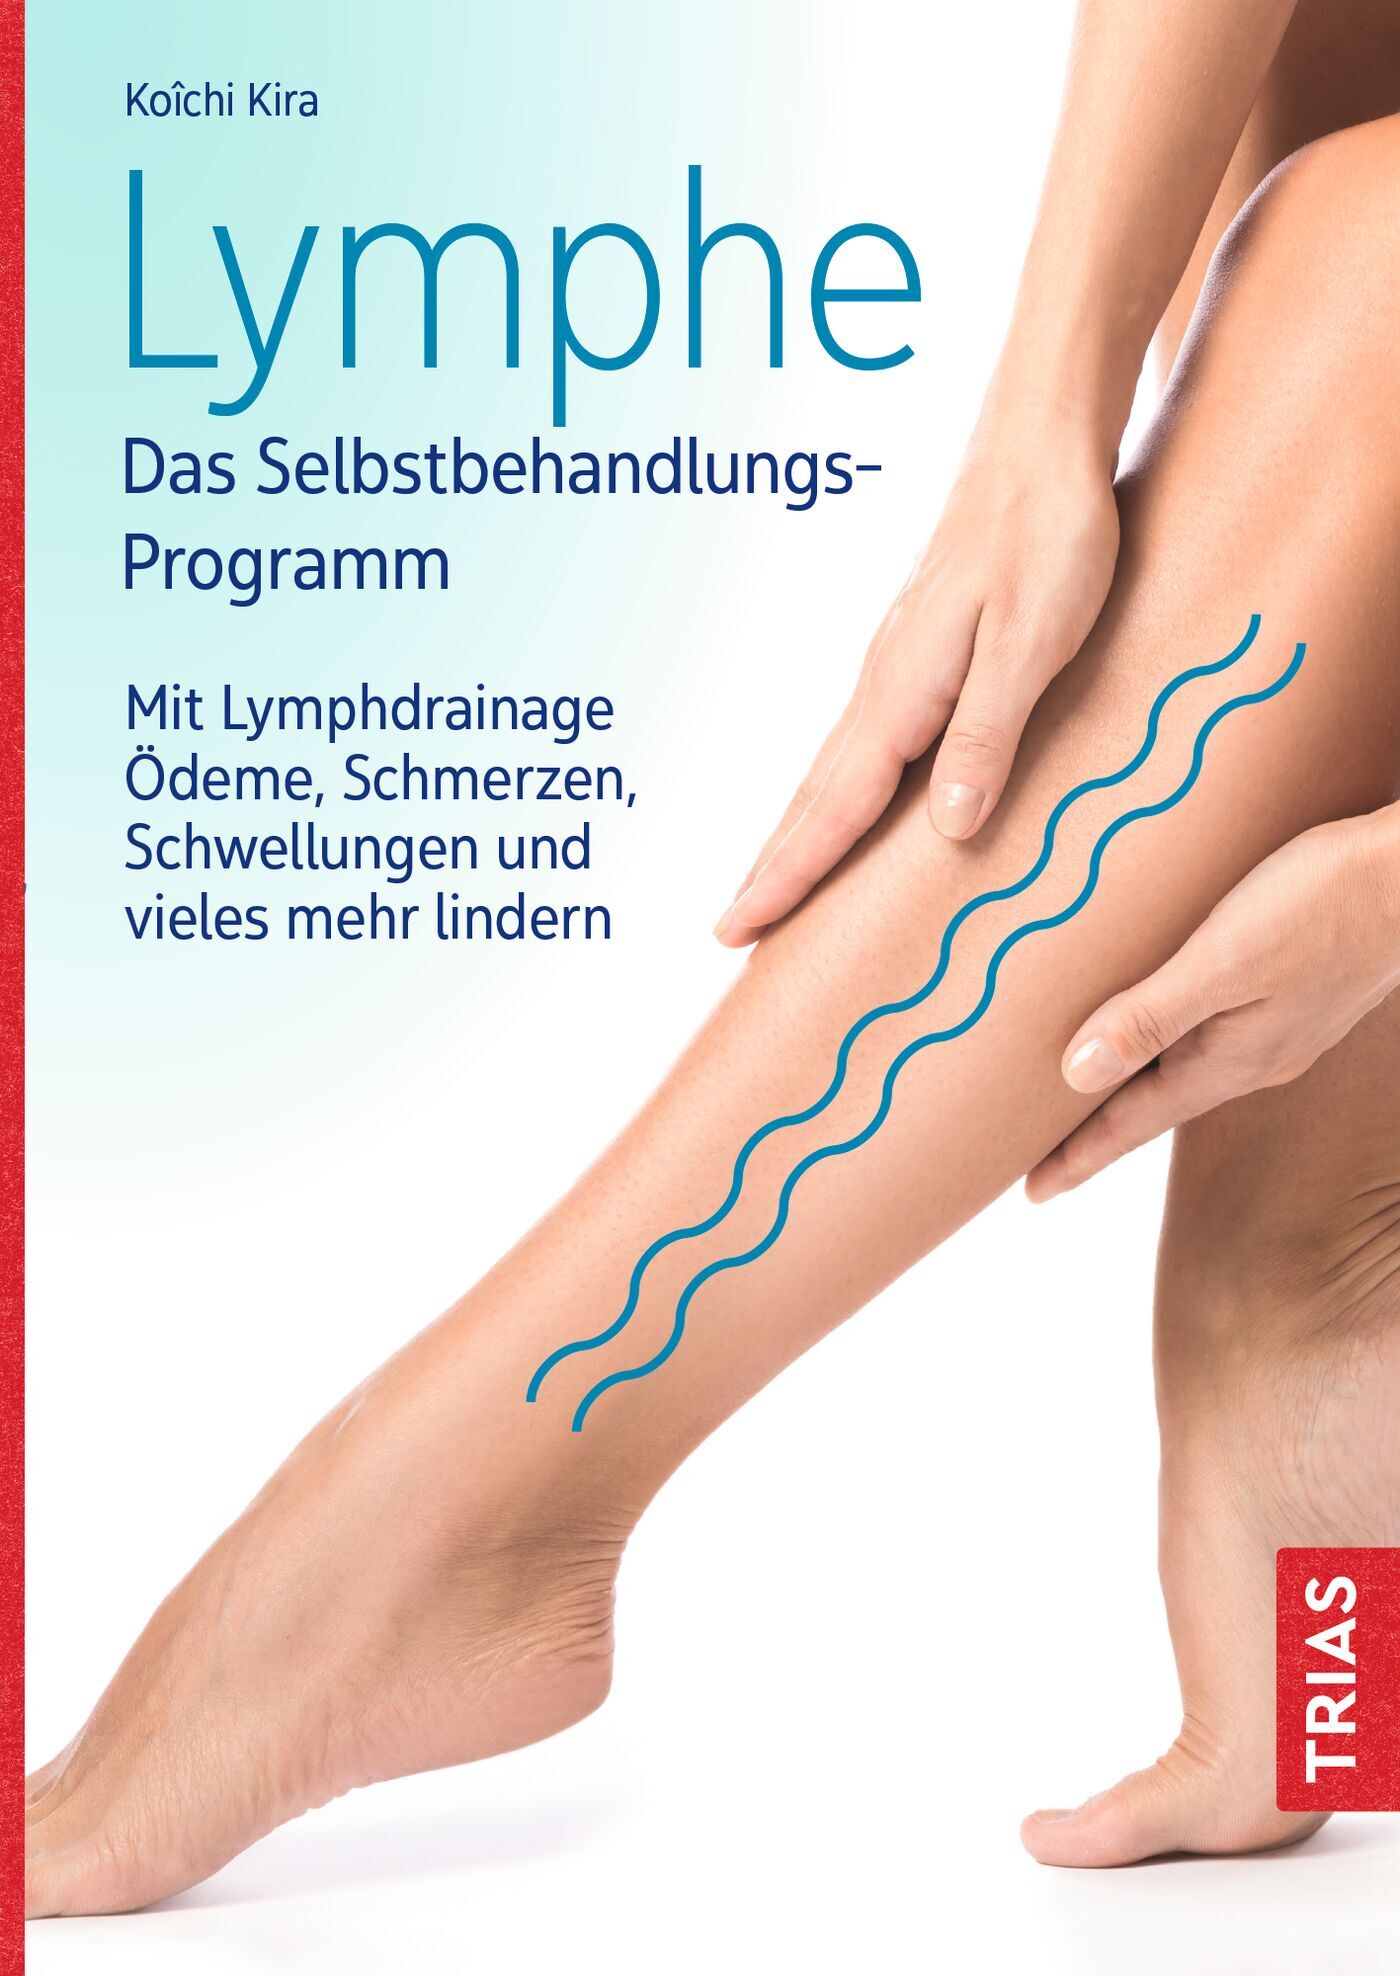 Lymphe - Das Selbstbehandlungs-Programm, 9783432113364